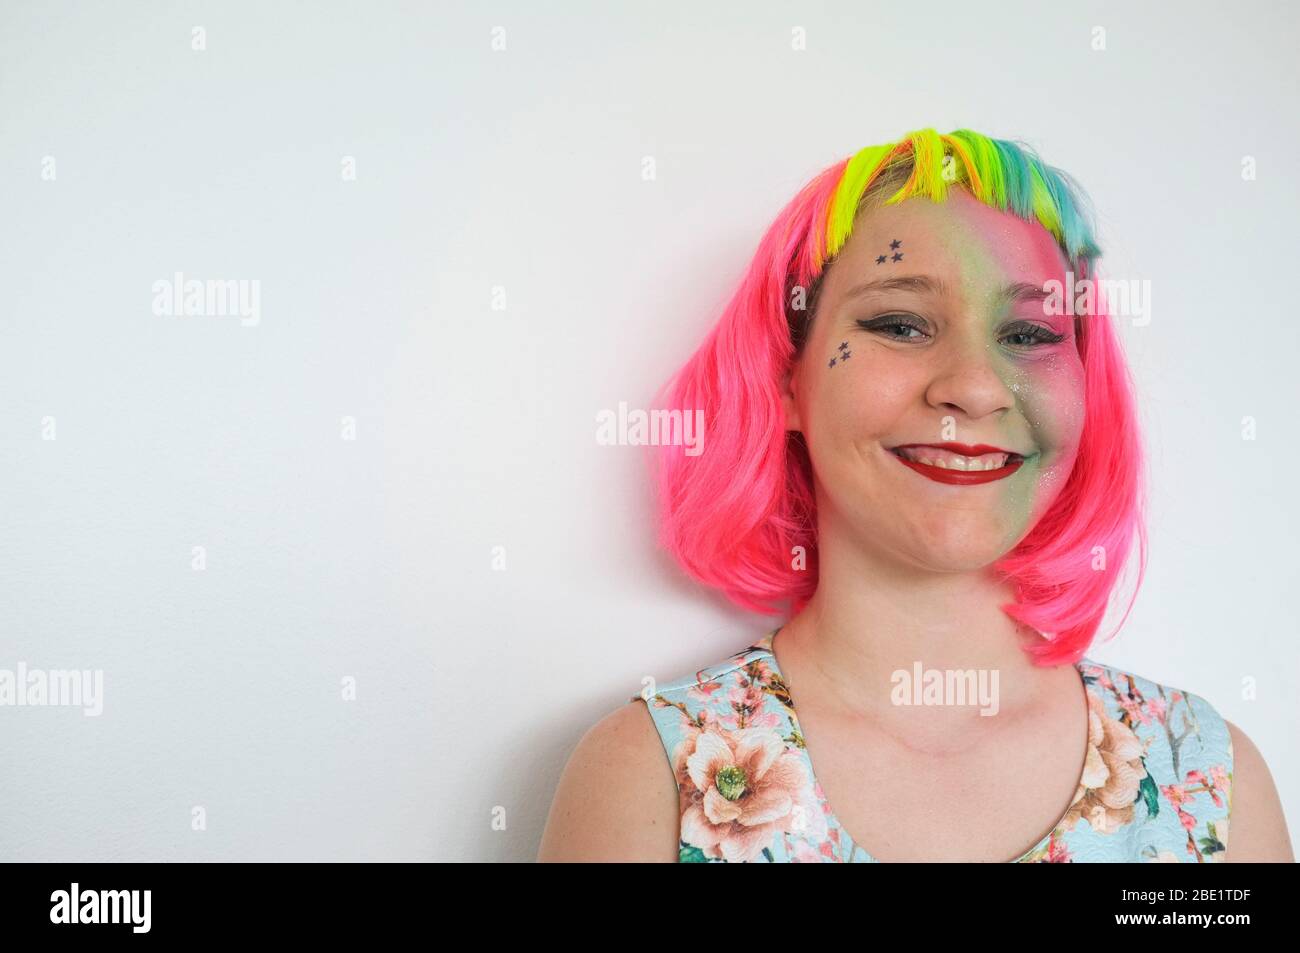 Une adolescente avec une perruque multicolore et un lourd appoint contre un mur blanc. Banque D'Images